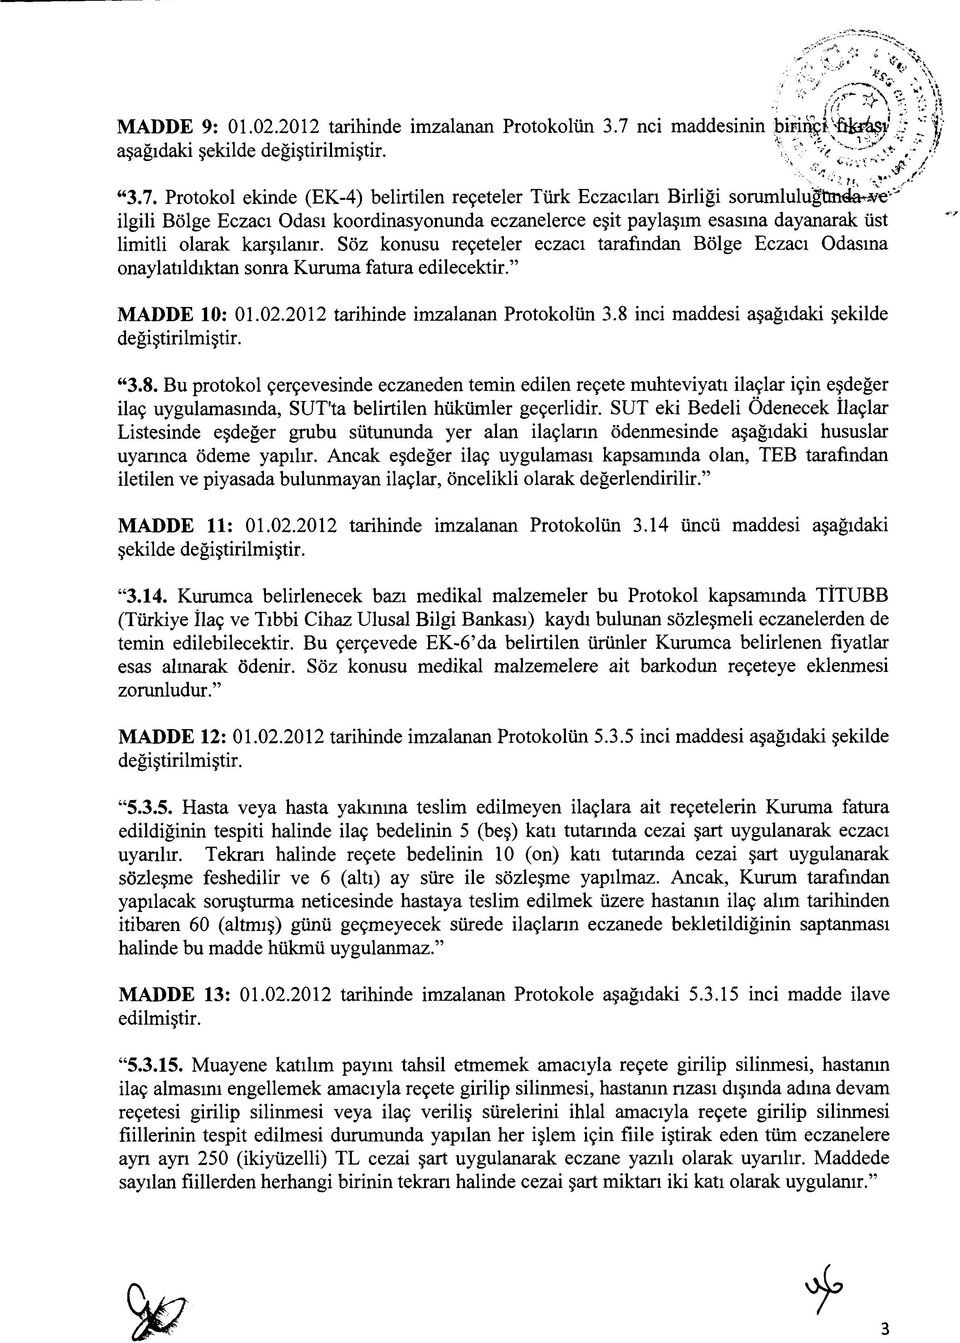 Protokol ekinde (EK-4) belirtilen reçeteler Türk Eczacıları Birliği sorumlulugtmda^e'-' ilgili Bölge Eczacı Odası koordinasyonunda eczanelerce eşit paylaşım esasına dayanarak üst limitli olarak